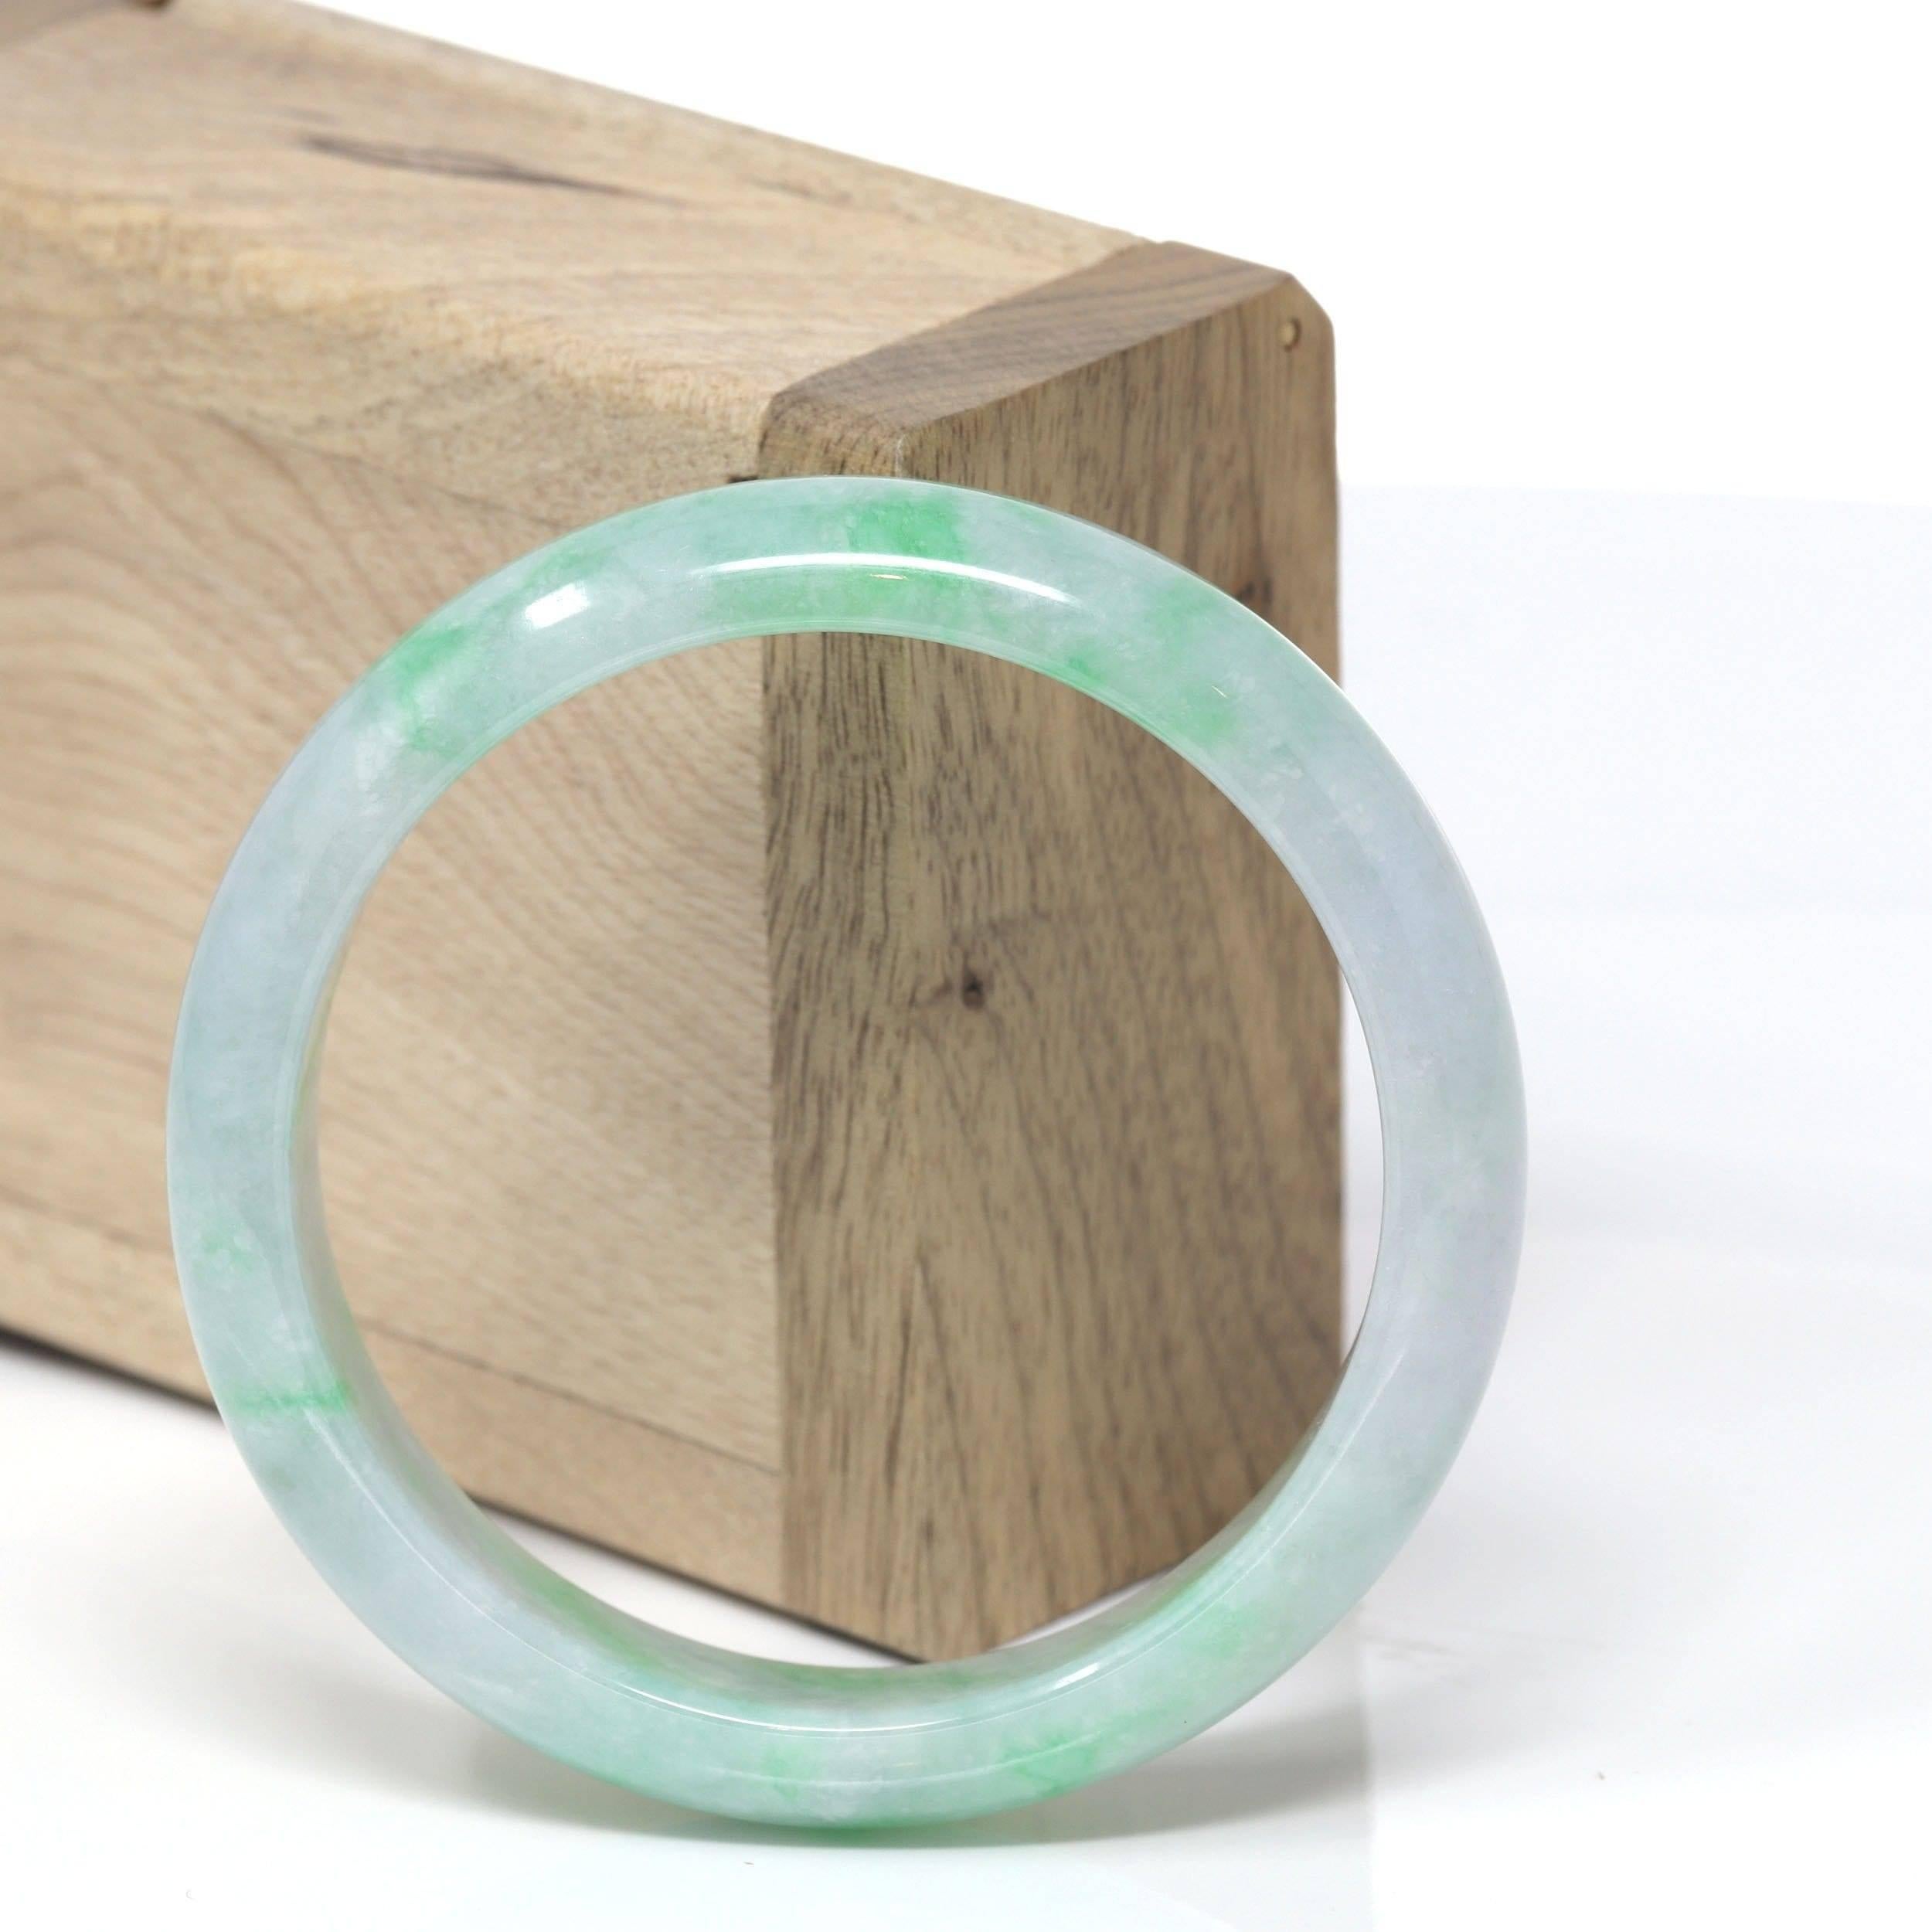 * DETAILS--- Echtes burmesisches Jadeit-Jade-Armband. Dieser Armreif ist aus echter eisgrüner burmesischer Jadeit-Jade von hoher Qualität gefertigt. Die Jadetextur ist transparent mit grünen und lavendelfarbenen Einschlüssen. Die grüne Farbe und die